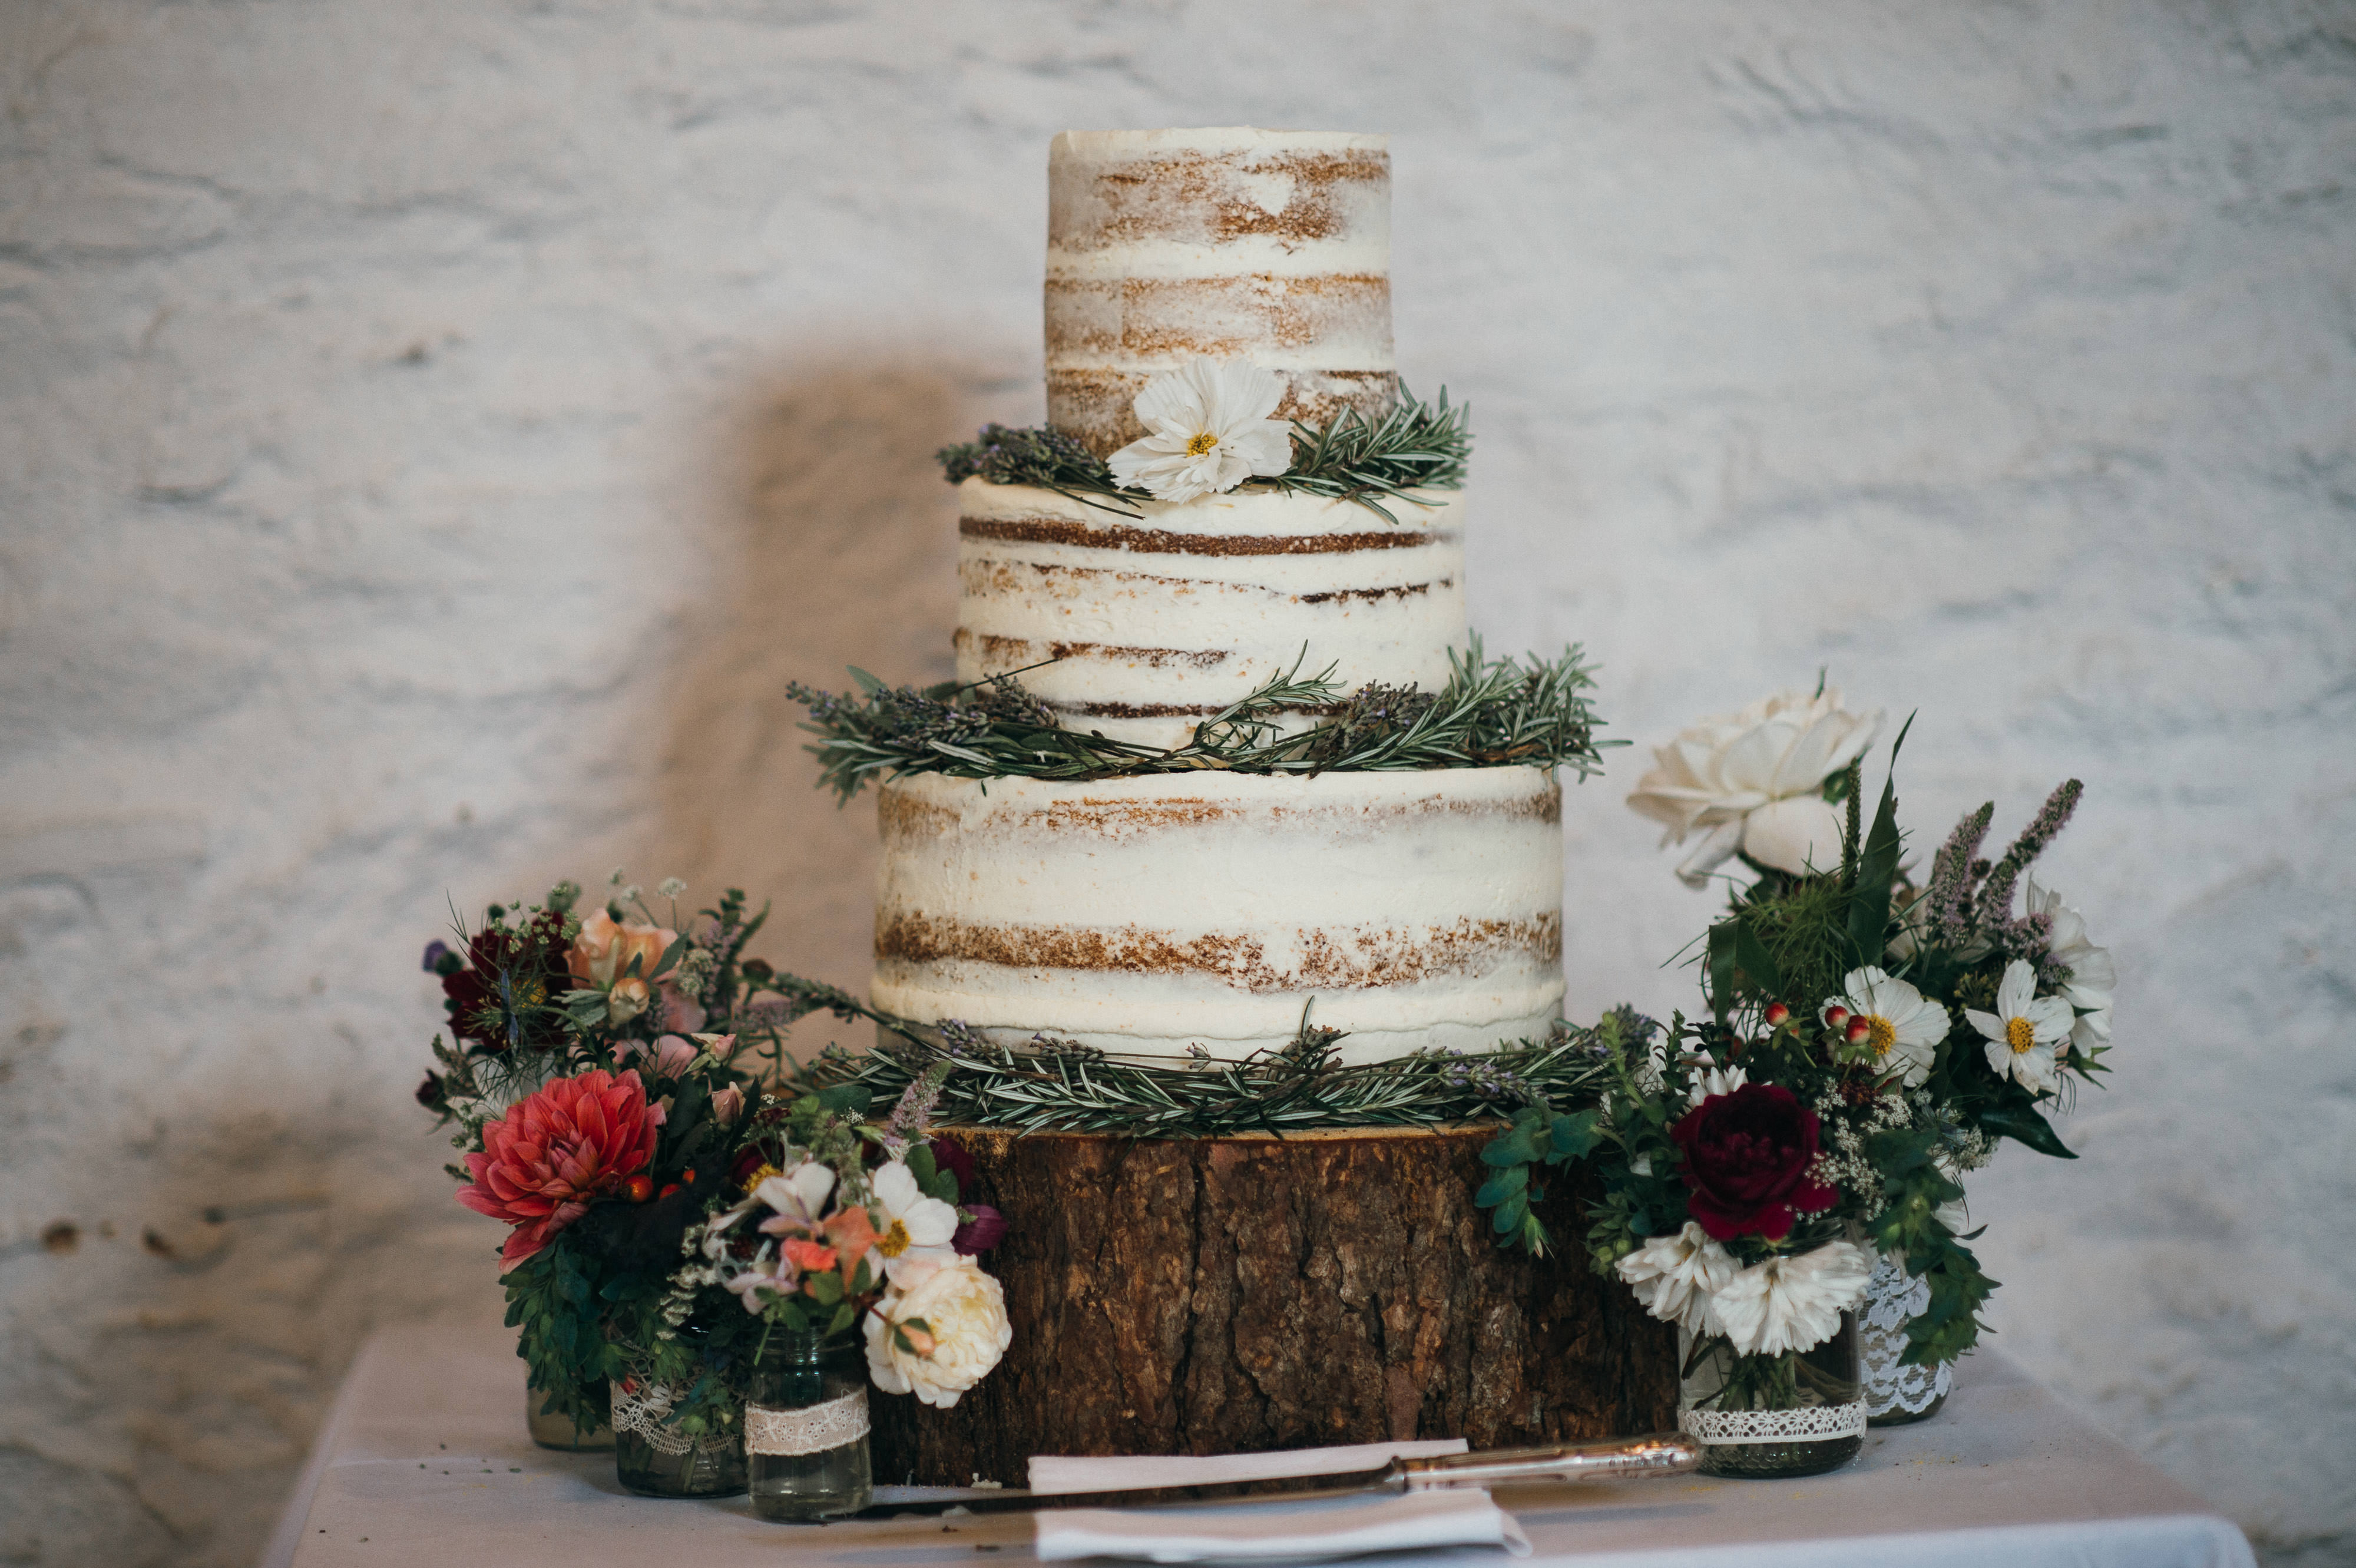 Hestercombe wedding photography 10 wedding cake